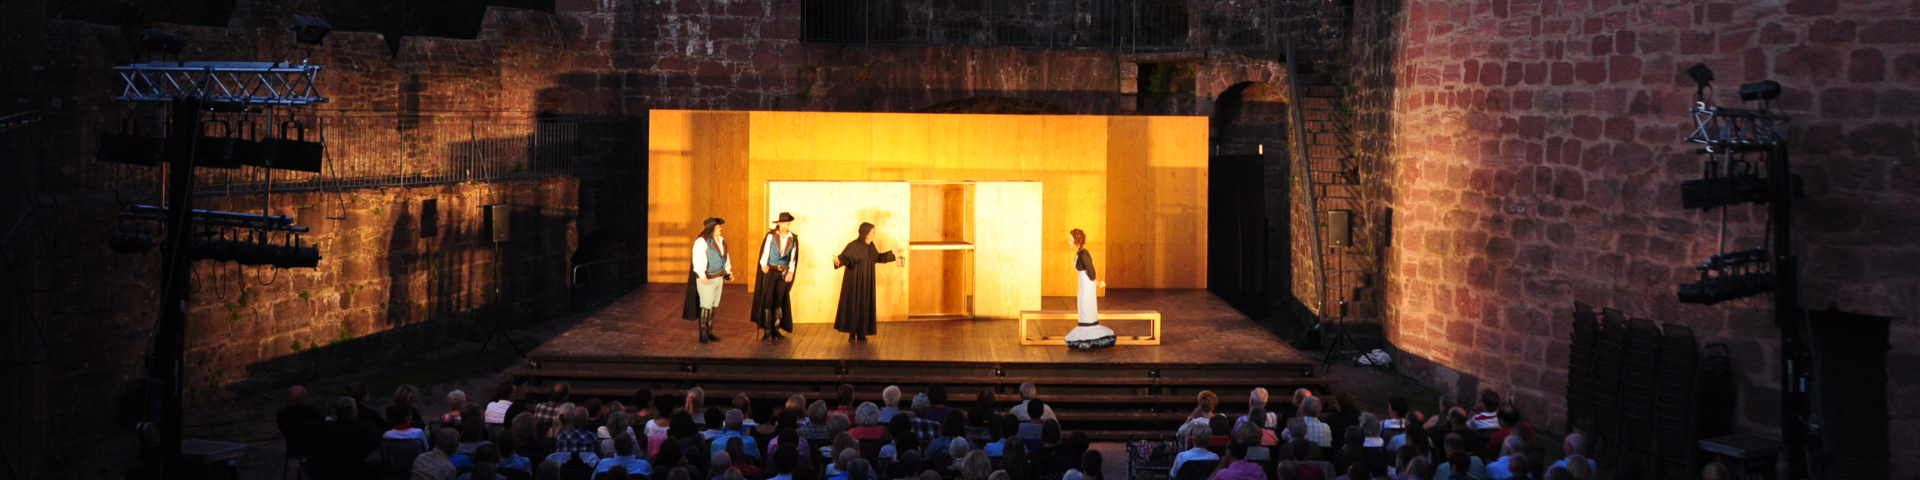 Foto einer Freilichtvorstellung des Theaterensembles "Badische Landesbühne" auf der Burg Wertheim